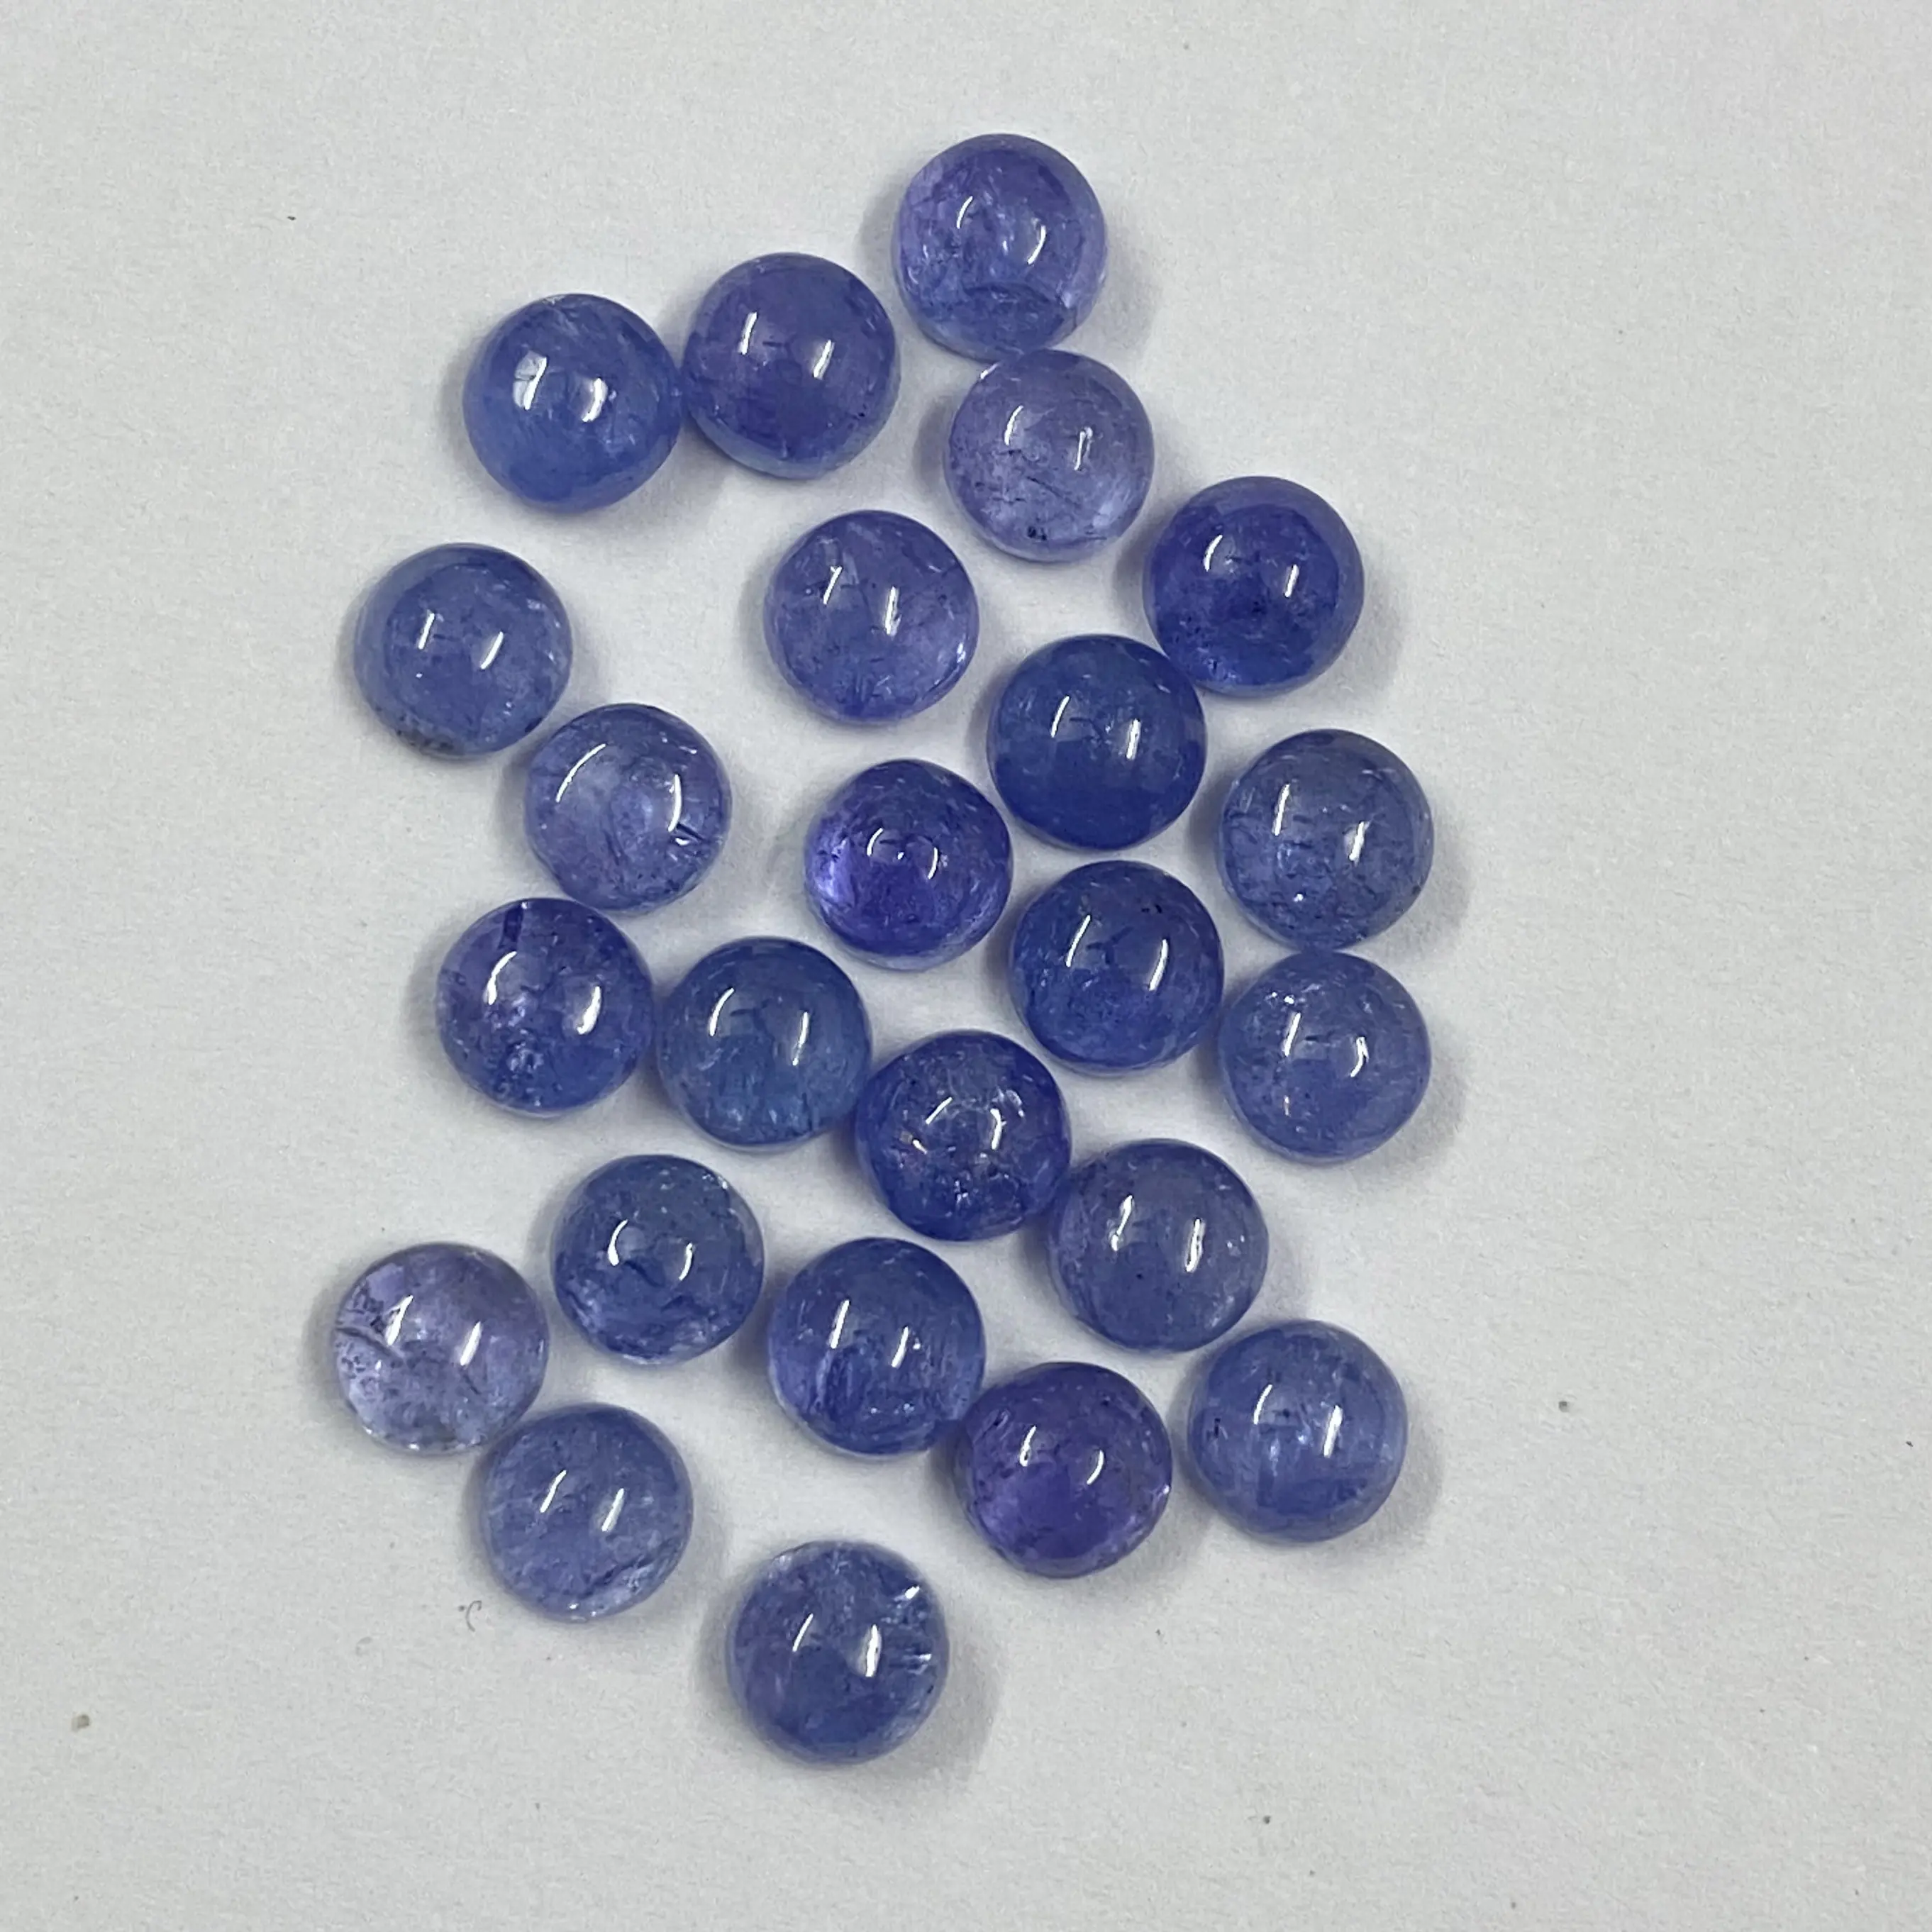 Les meilleurs cabochons ronds de couleur moyenne Tanzanite naturelle 7mm pour la fabrication de bijoux pierres précieuses en vrac de fournisseur vérifié au prix coûtant